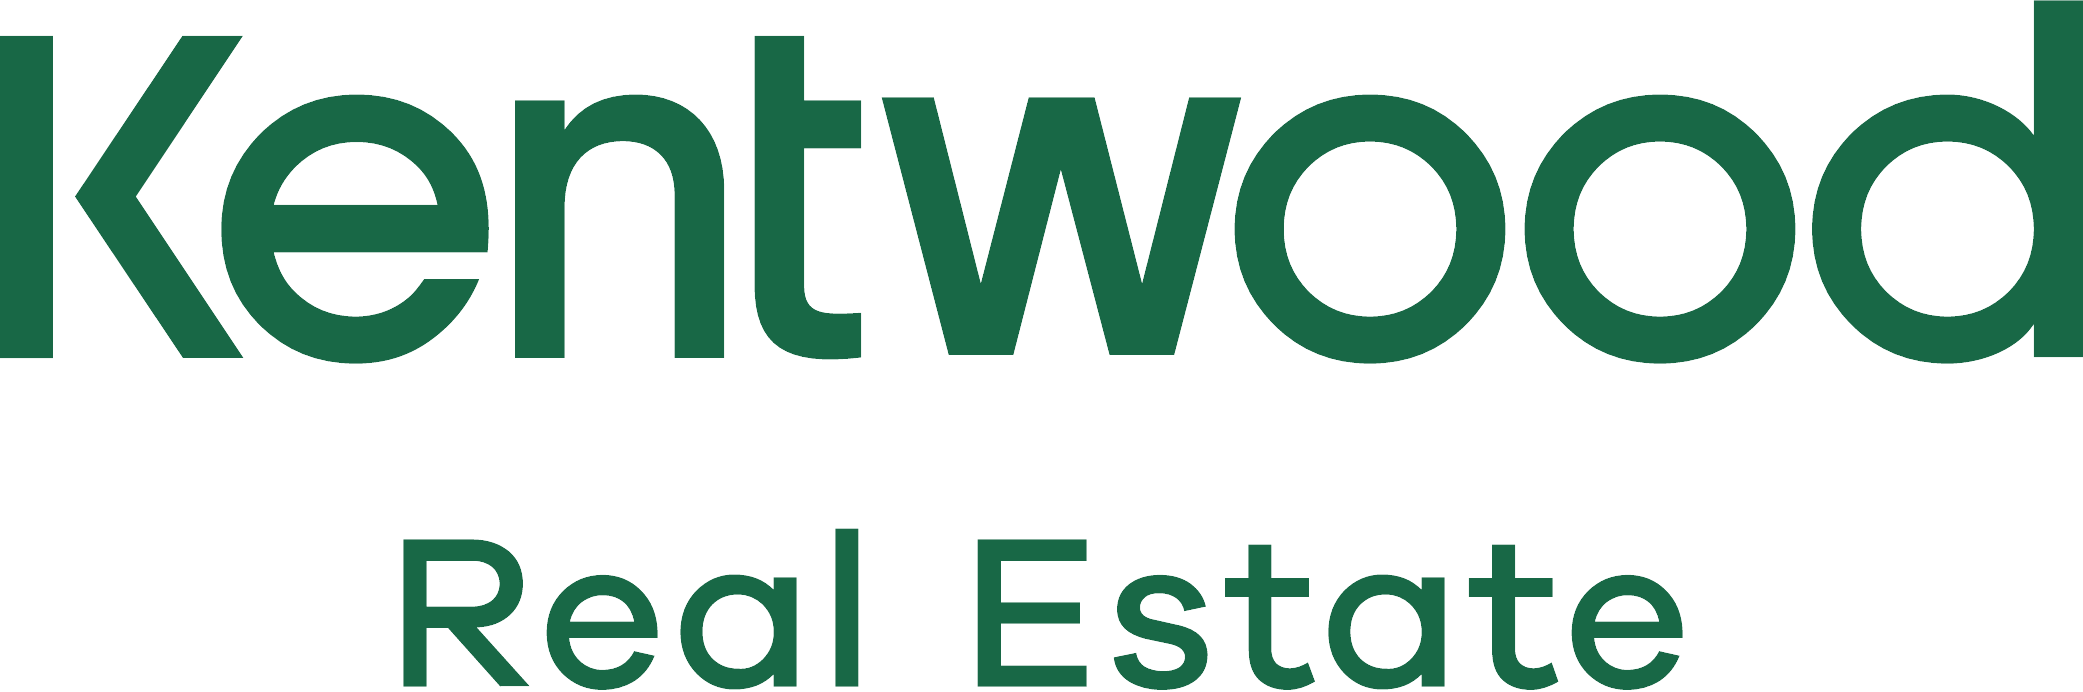 Kentwood logo.png